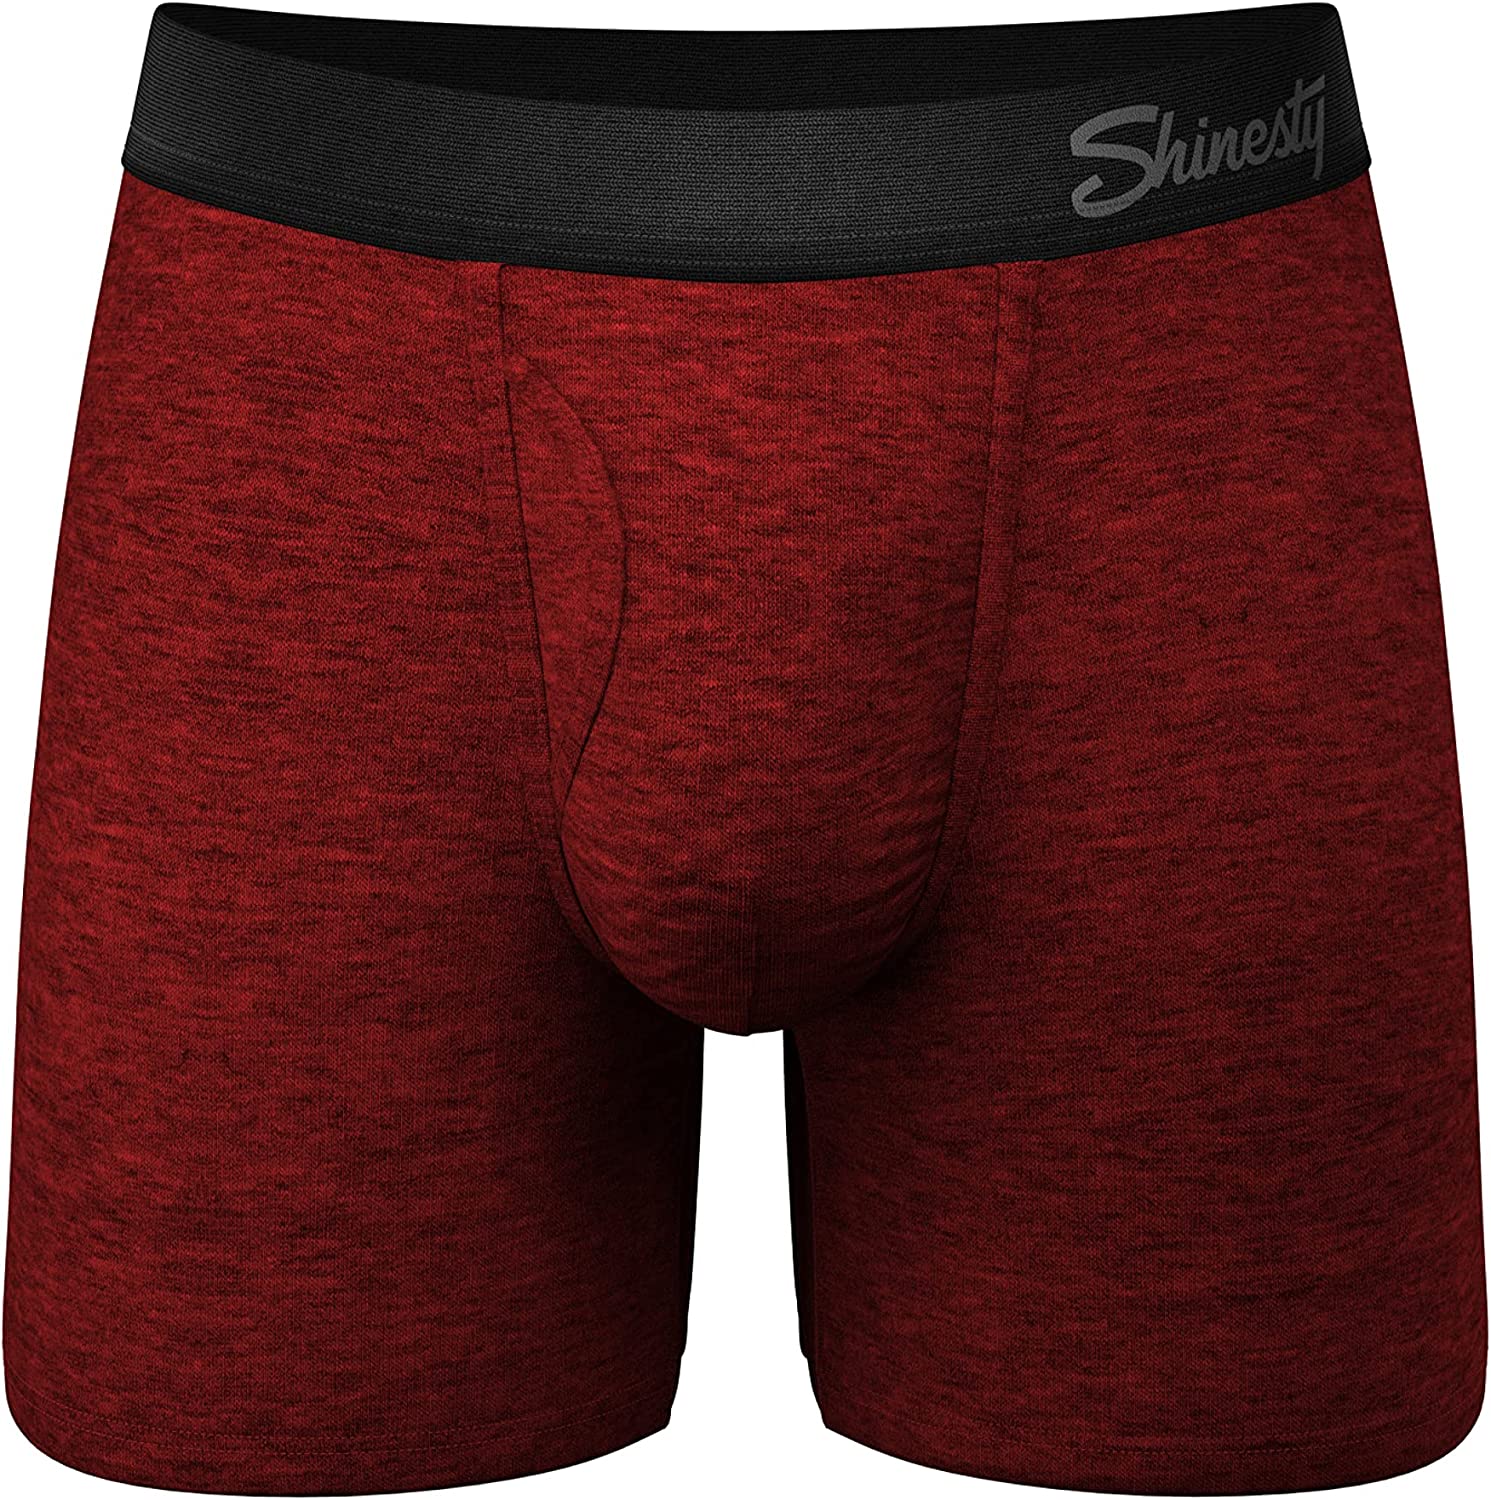 Men Pouch Boxer Briefs Micro Modal Ball Hammock Underwear - Expore